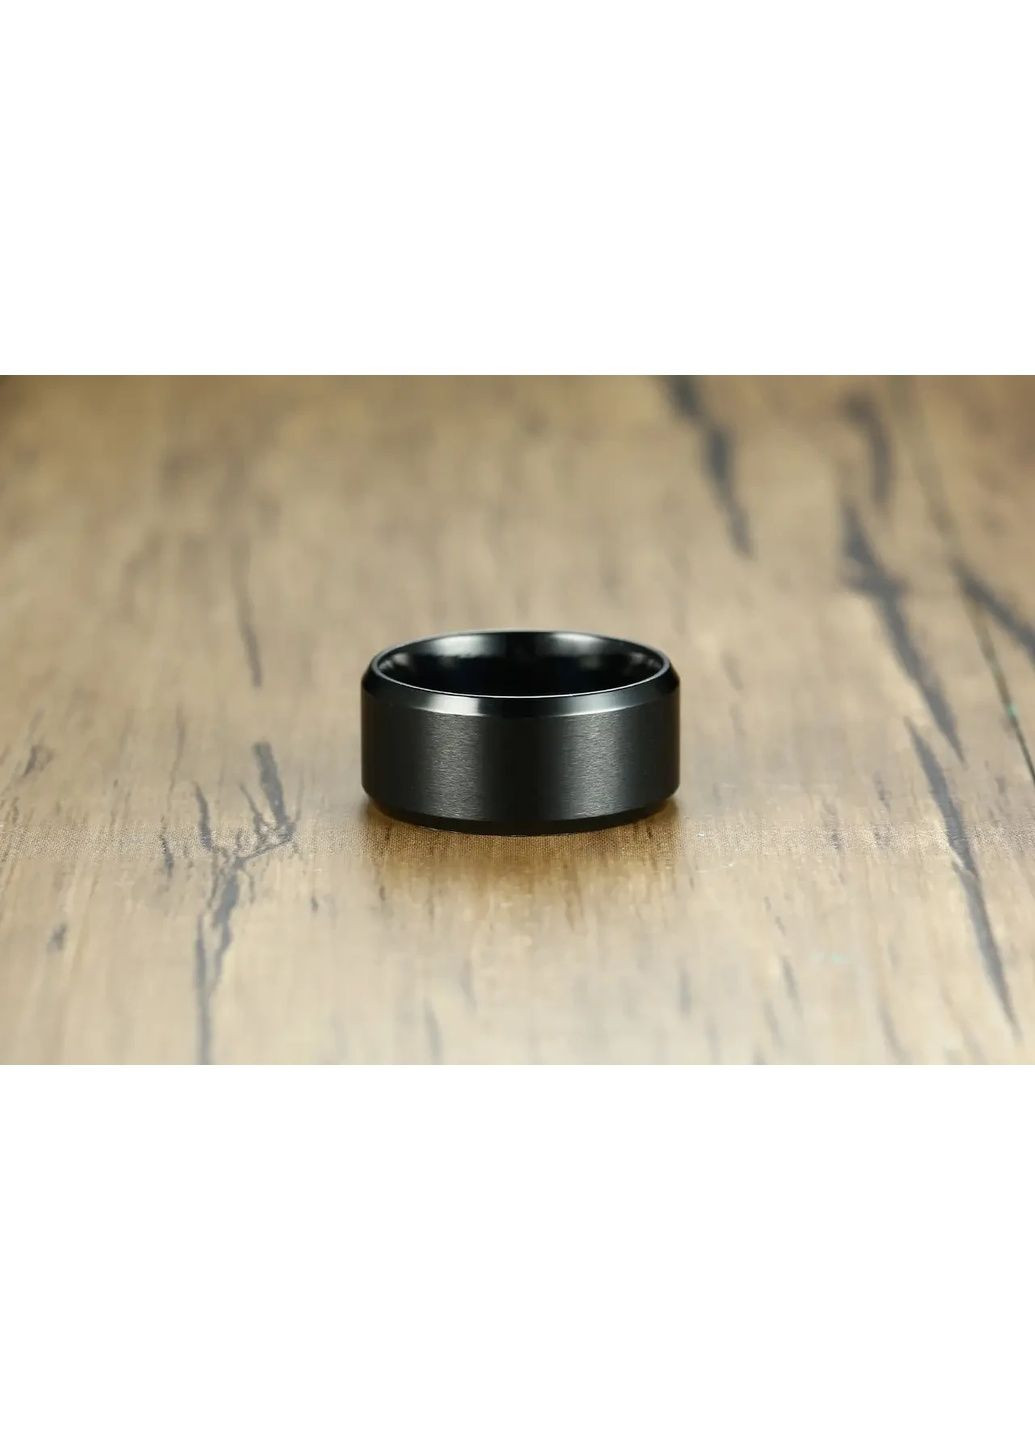 Мужское кольцо черное, Размеры 16-23, Черное кольцо для парней К-1 No Brand (289870025)